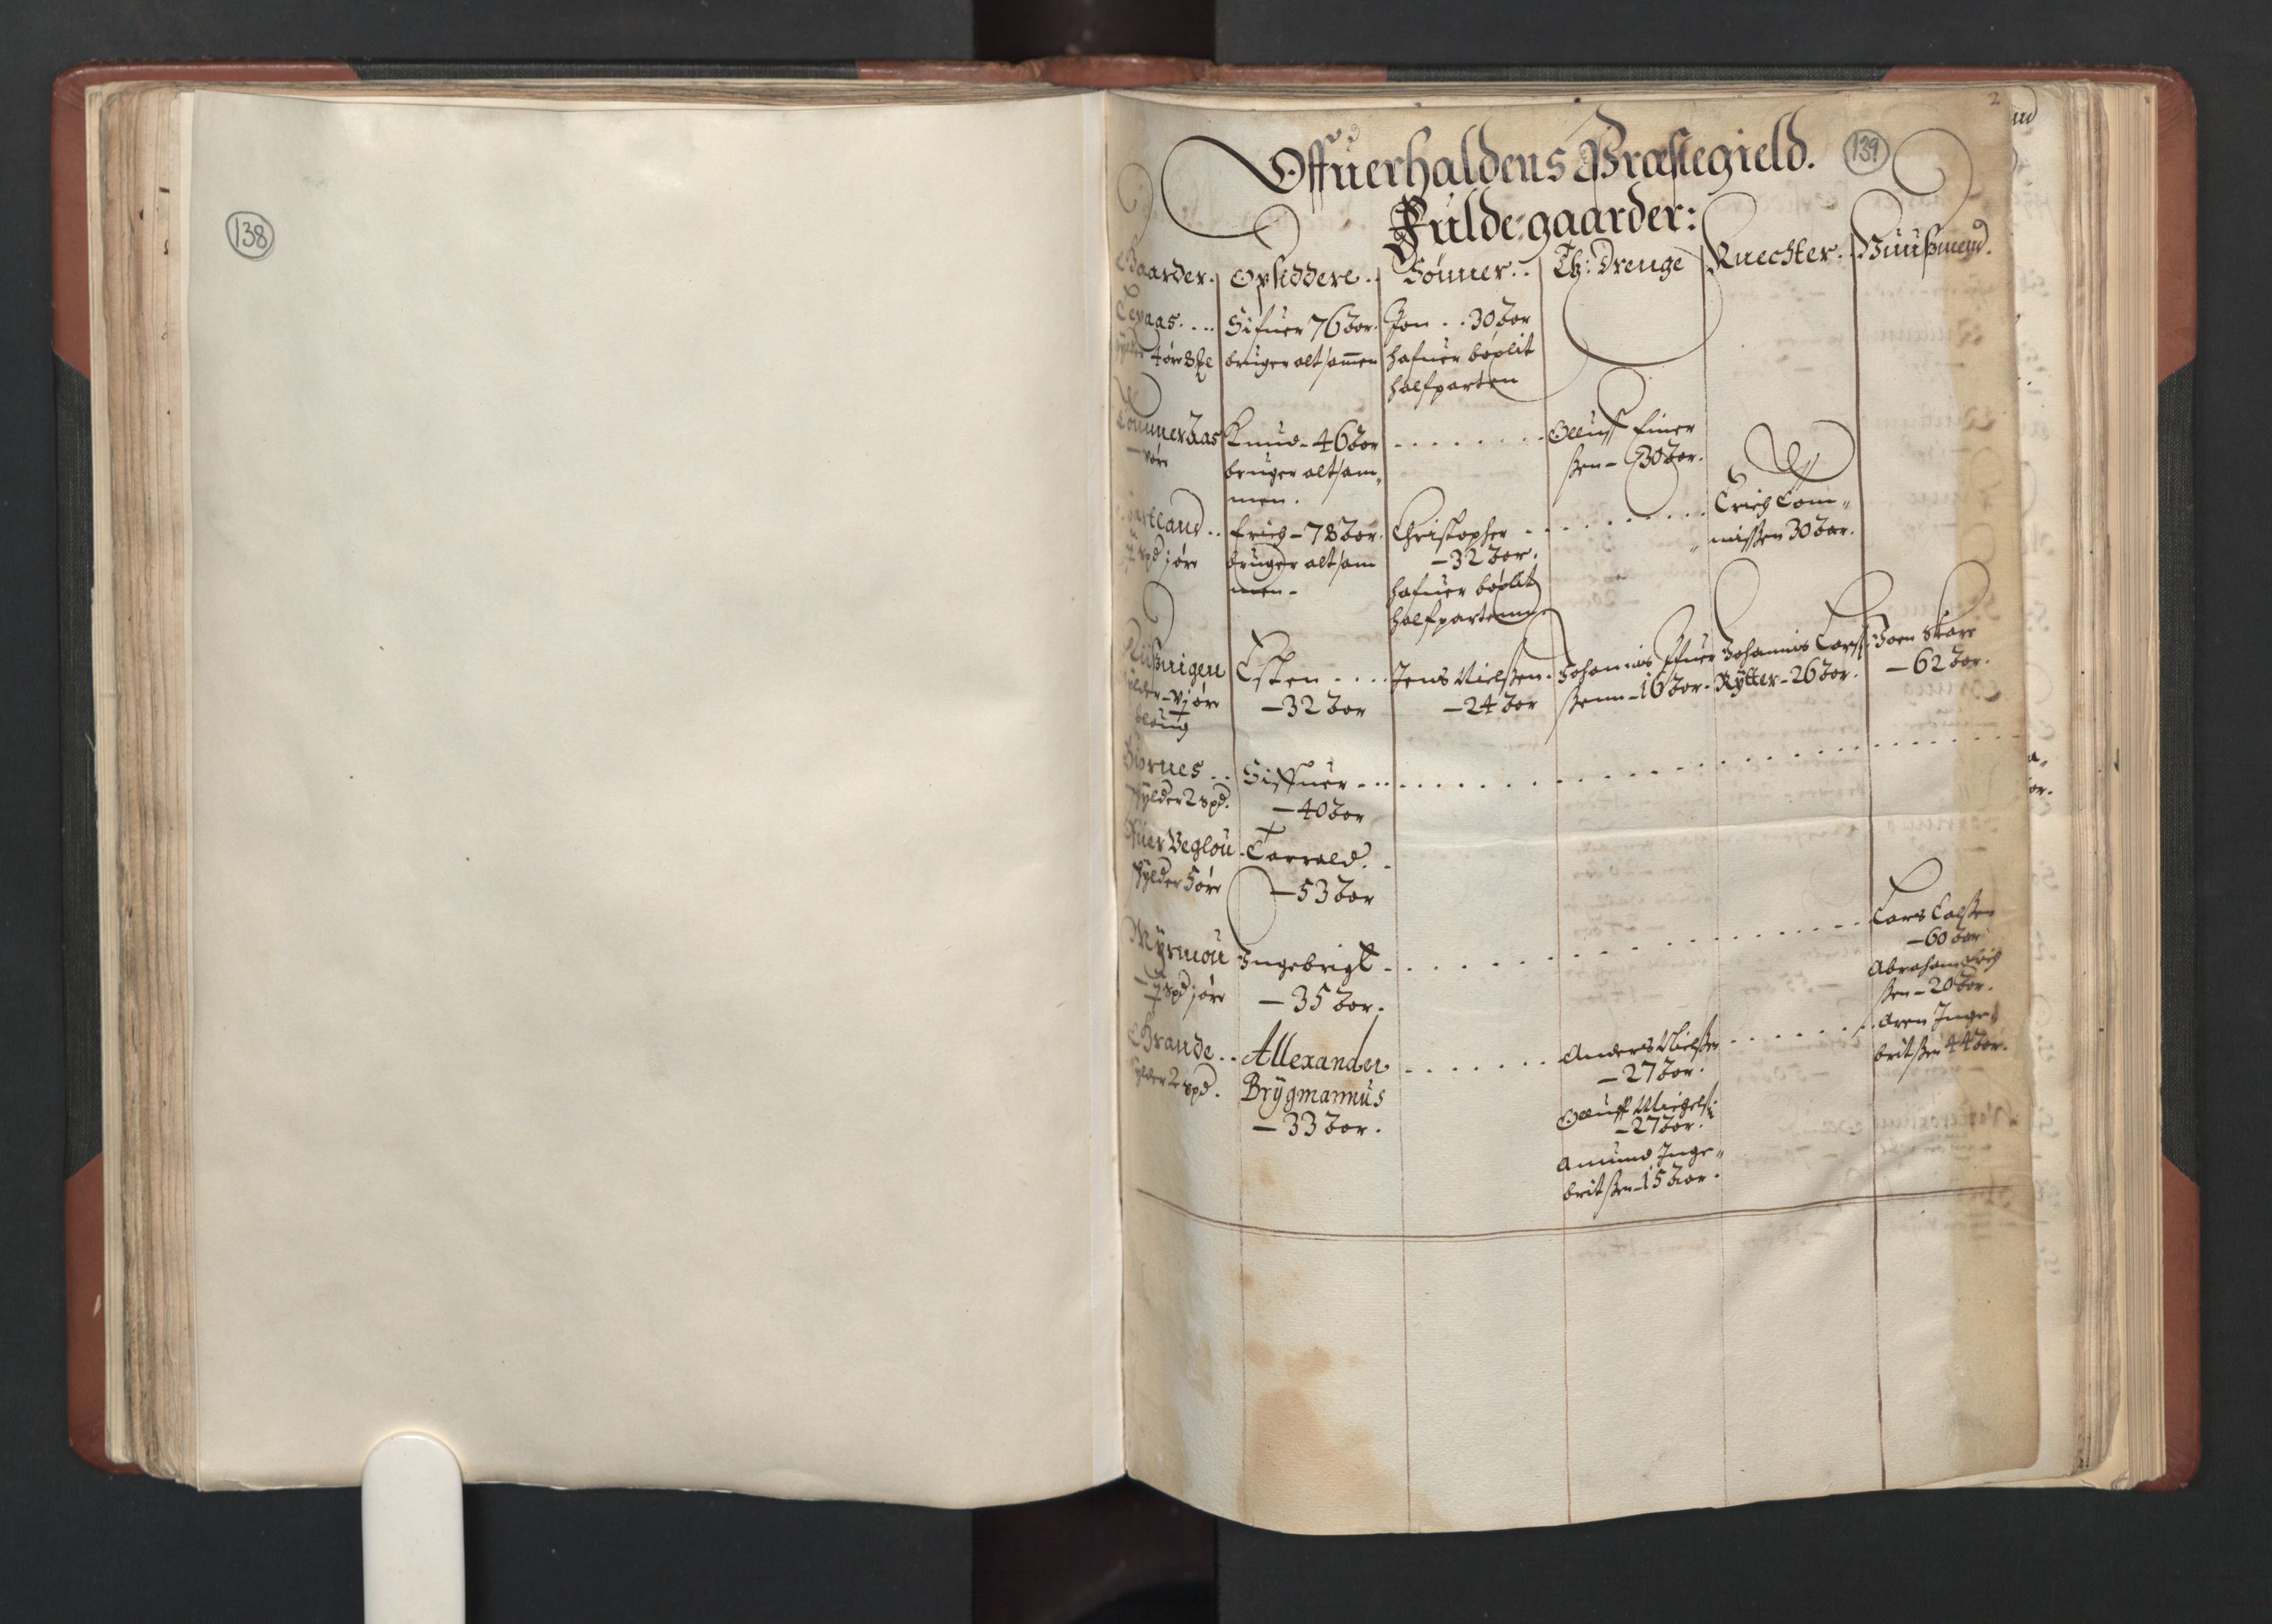 RA, Fogdenes og sorenskrivernes manntall 1664-1666, nr. 19: Fosen fogderi, Inderøy fogderi, Selbu fogderi, Namdal fogderi og Stjørdal fogderi, 1664-1665, s. 138-139